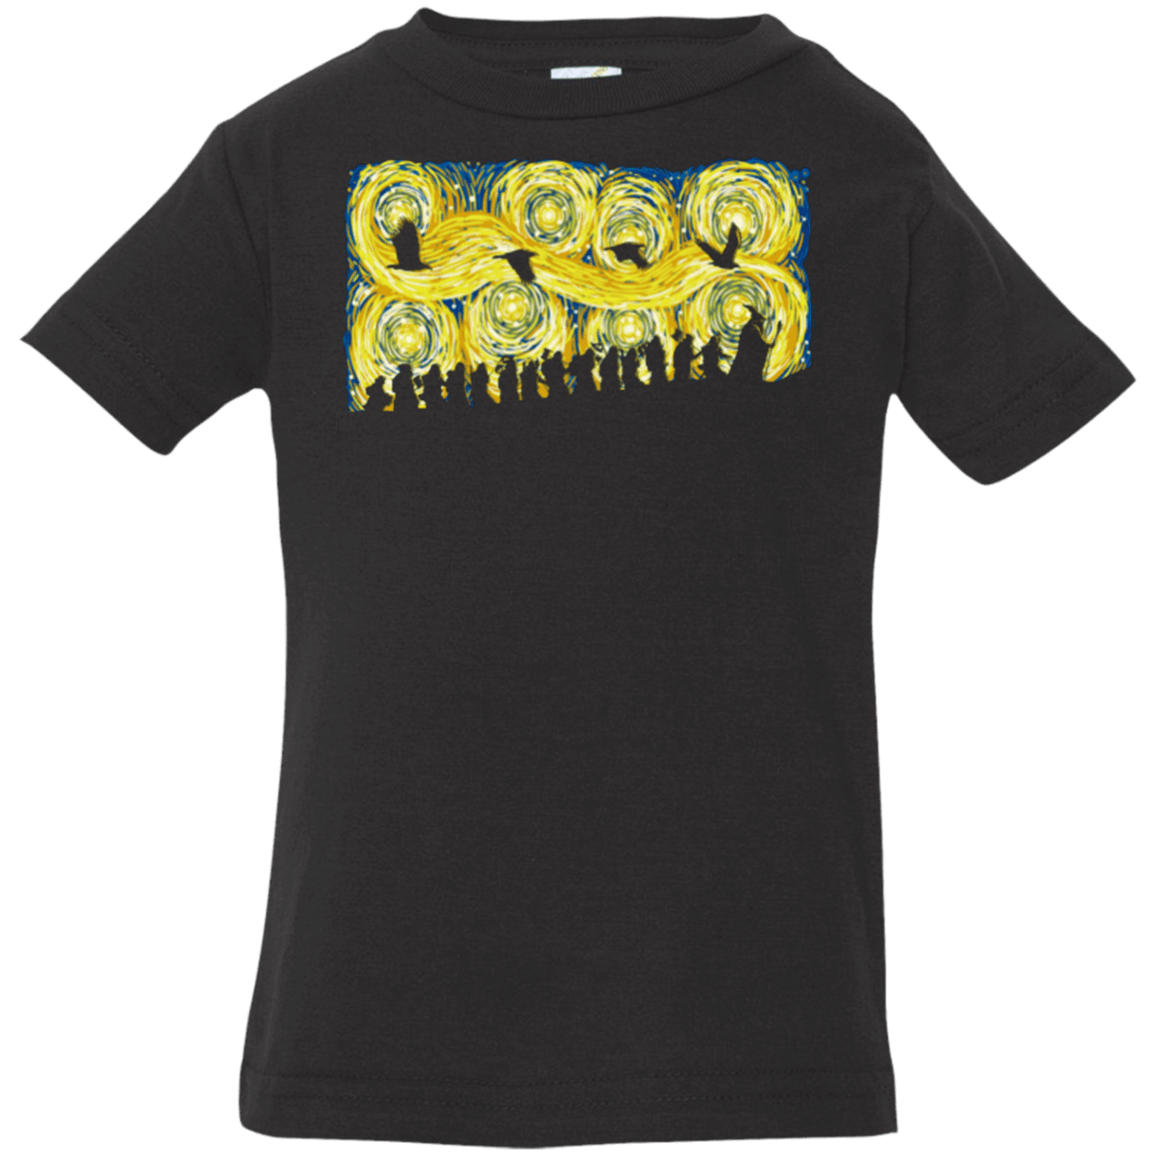 T-Shirts Black / 6 Months Starry Adventure Infant Premium T-Shirt